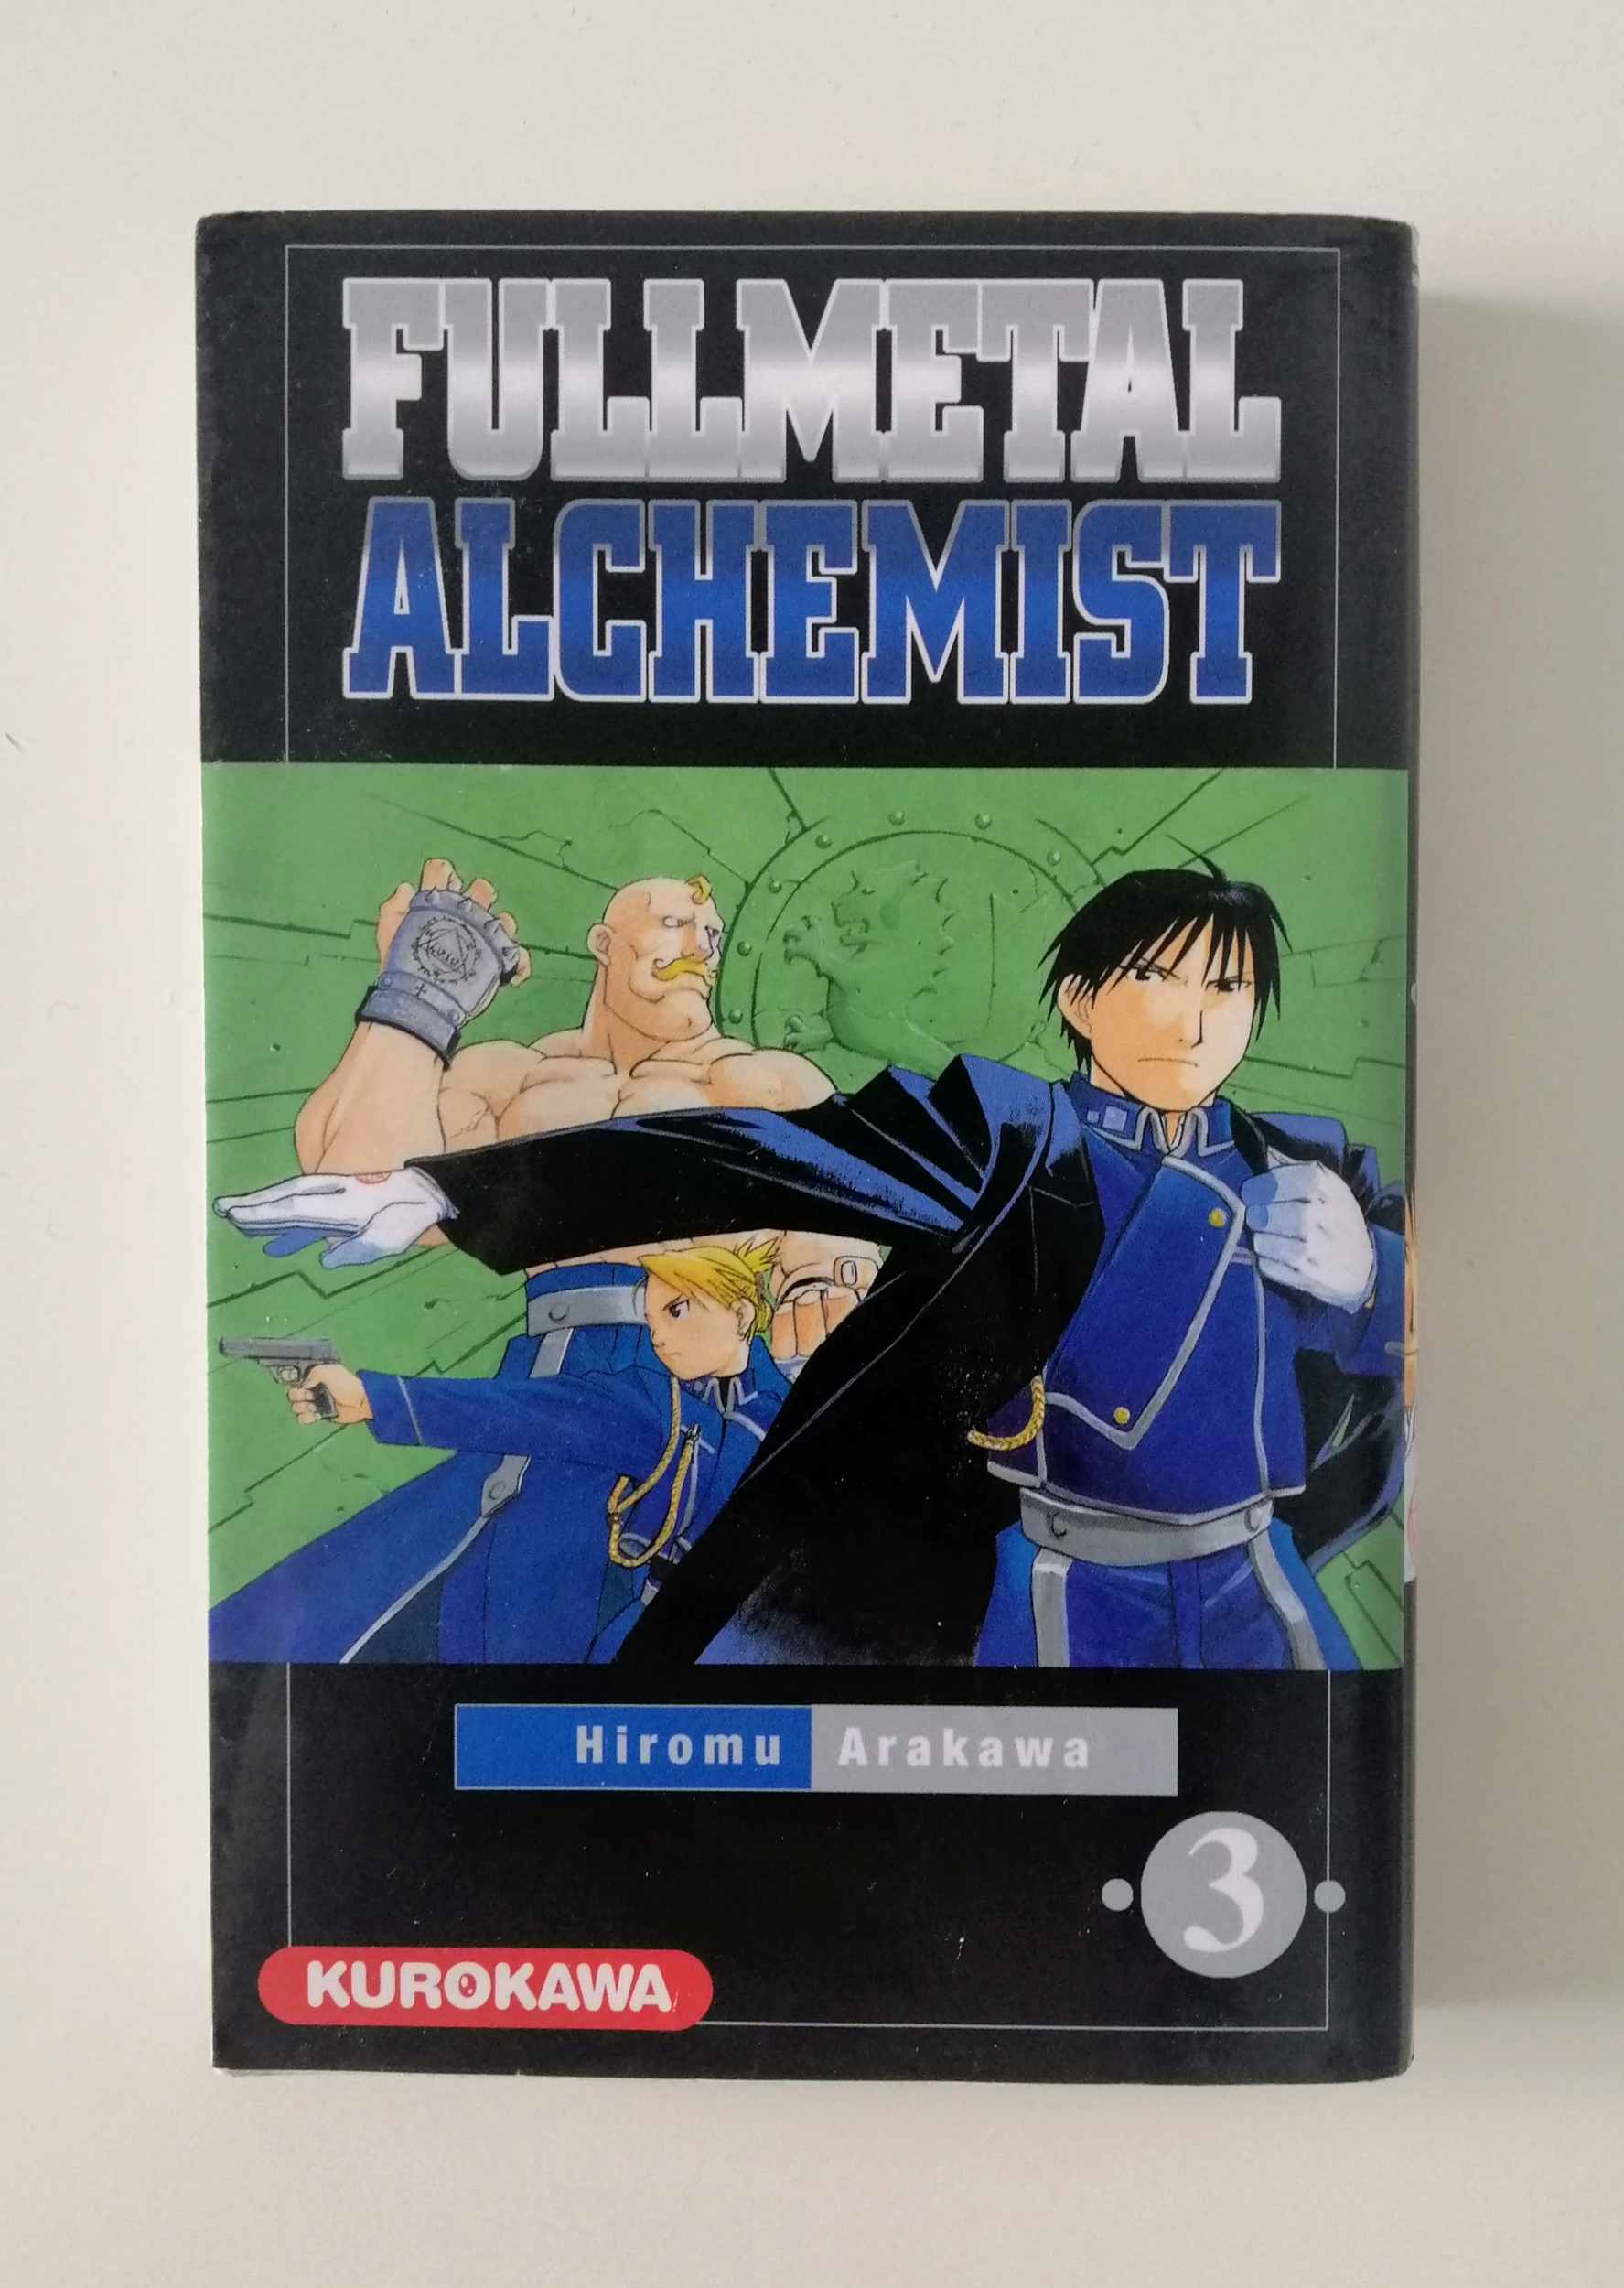 FullMetal Alchemist 3 (Hiromu Arakawa)